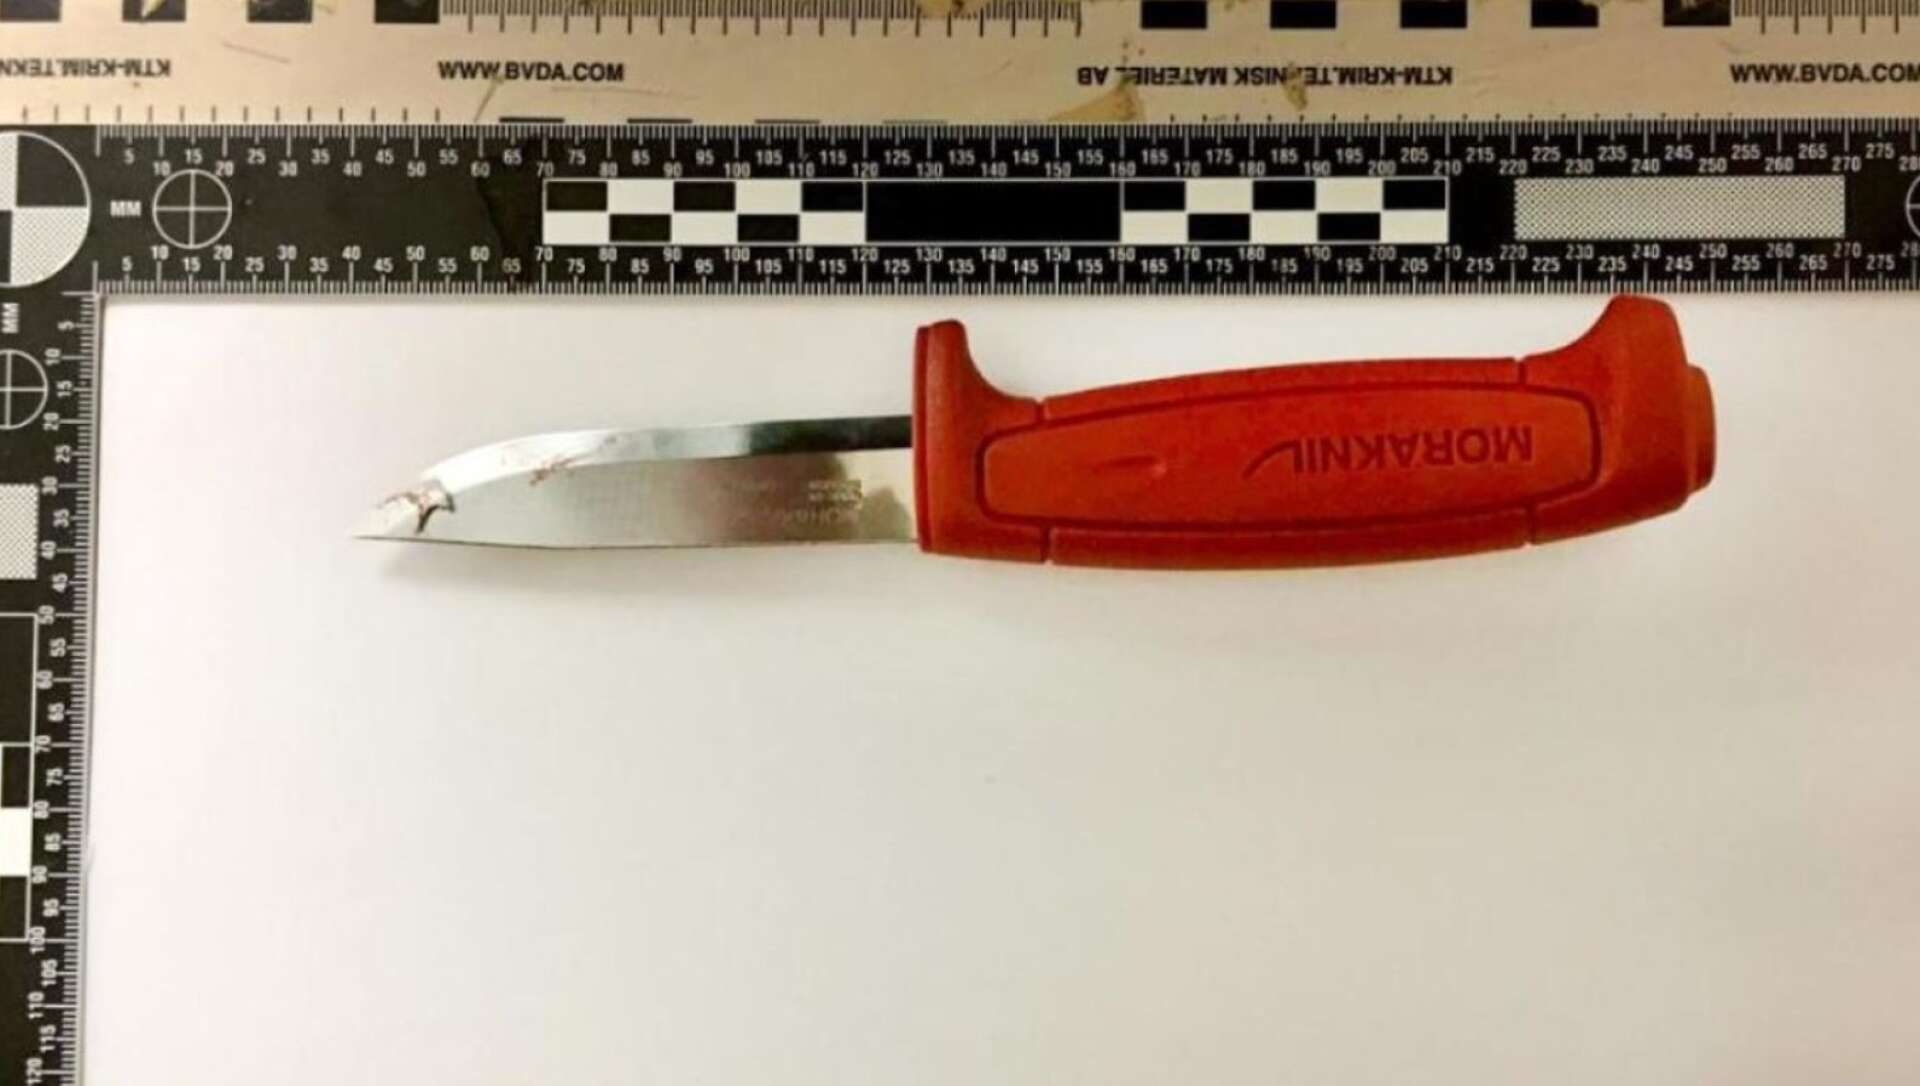 Kniven som användes hade flickan tagit ur sin pappas verktygslåda.